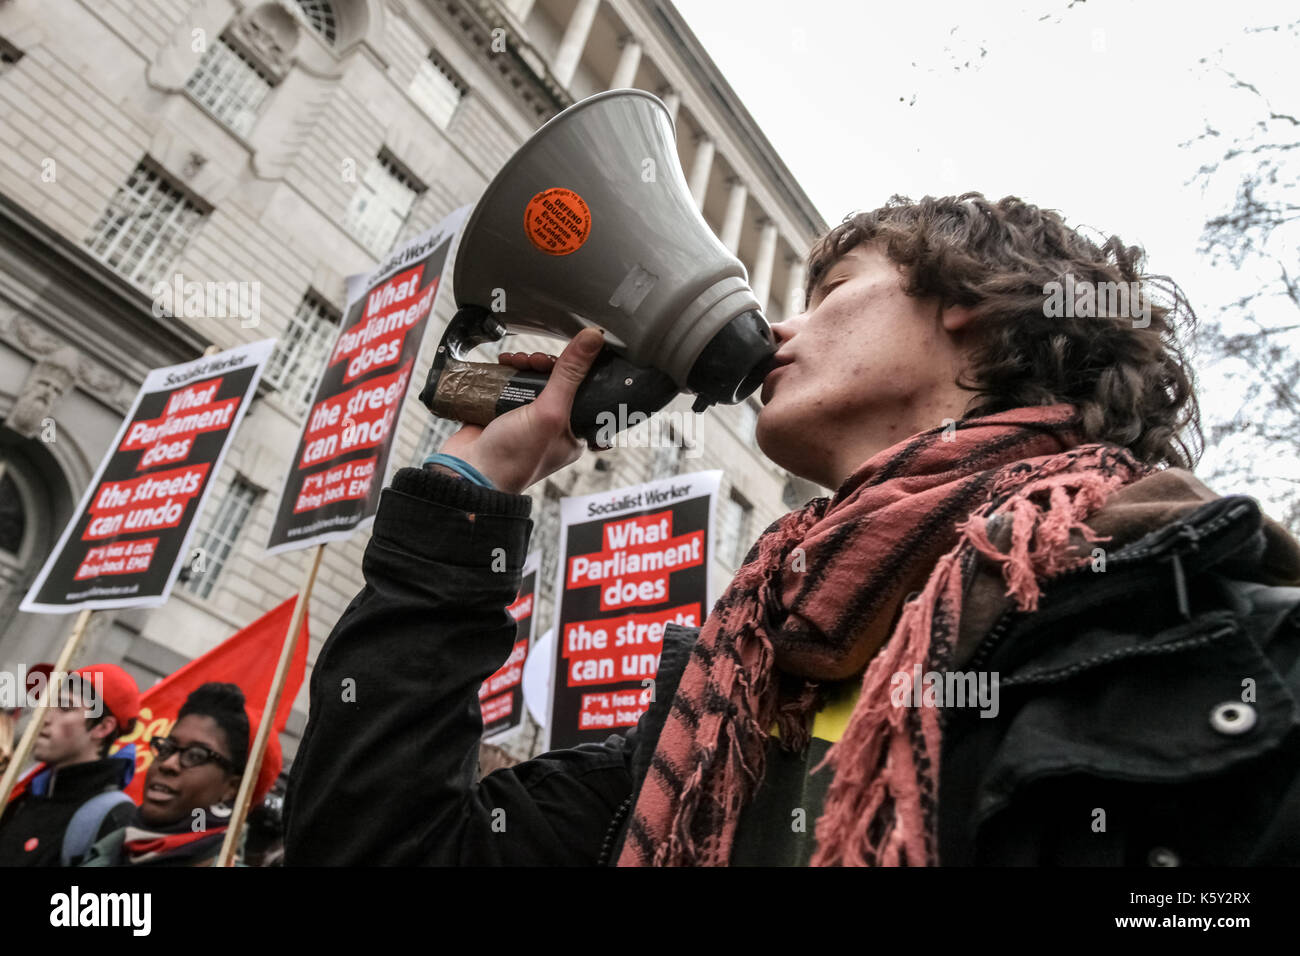 La protesta degli studenti nel centro di Londra contro i tagli della spesa pubblica e l'aumento delle tasse universitarie. Foto Stock